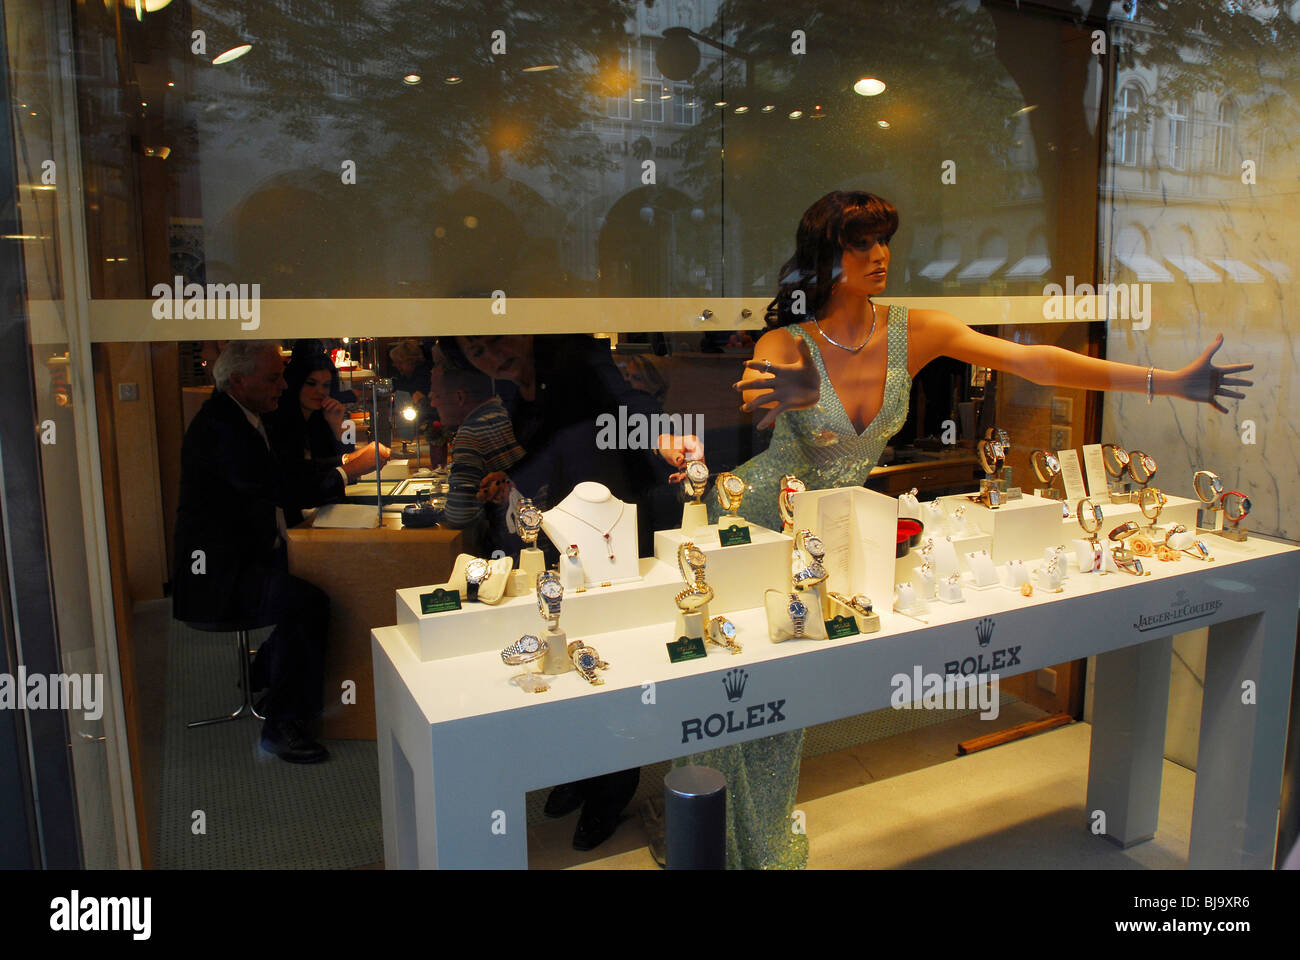 Schaufenster eines Rolex Schmuck Shop, Zürich, Schweiz Stockfotografie -  Alamy